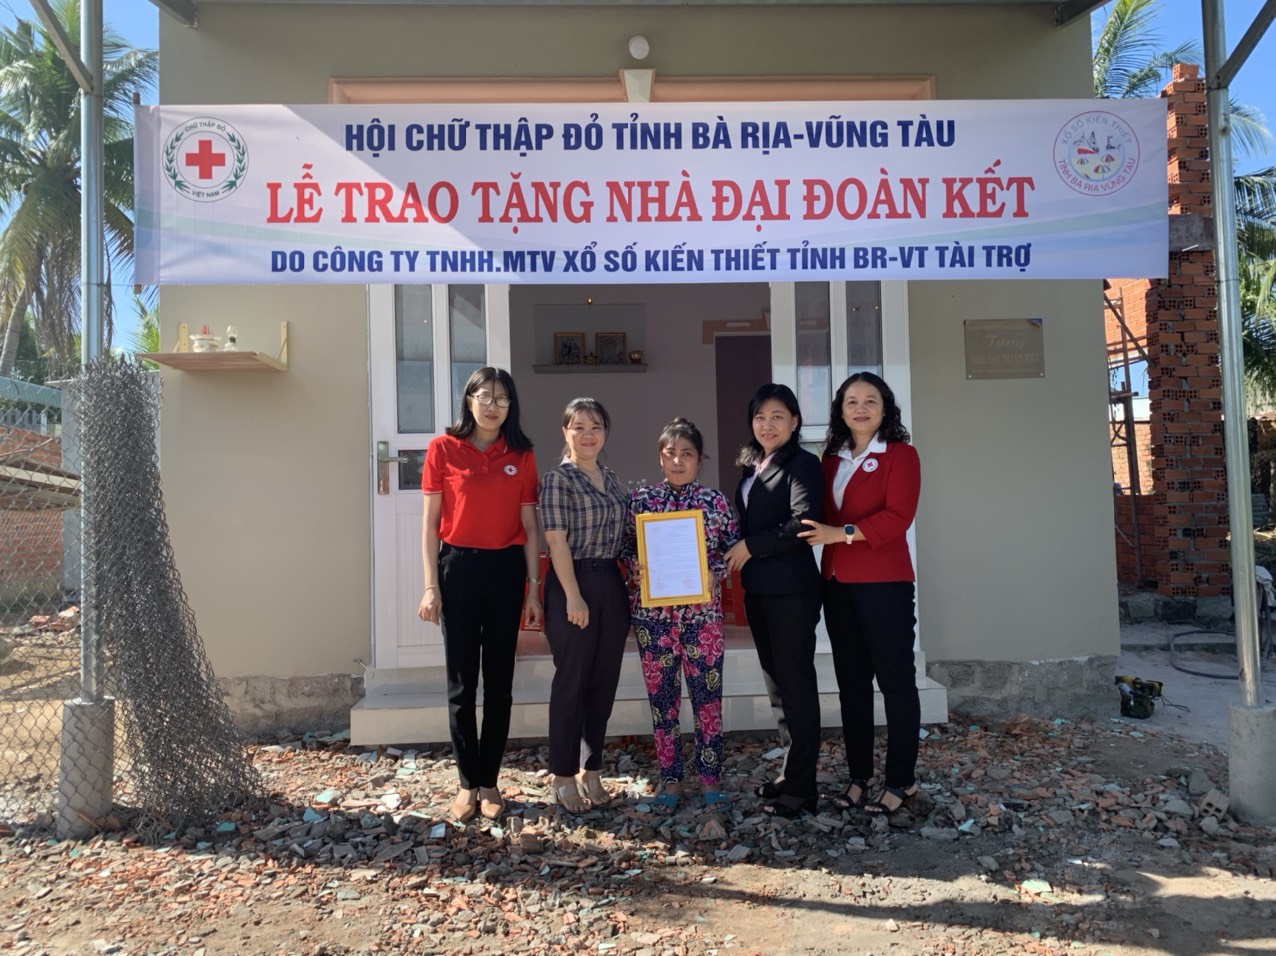 Hội Chữ thập đỏ (CTĐ) tỉnh phối hợp với Công ty TNHH MTV Xổ số kiến thiết tỉnh tổ chức lễ bàn giao nhà Đại đoàn kết cho hộ bà Đỗ Thị Mỹ Hạnh (ấp Phước Lăng, xã Tam Phước, huyện Long Điền).